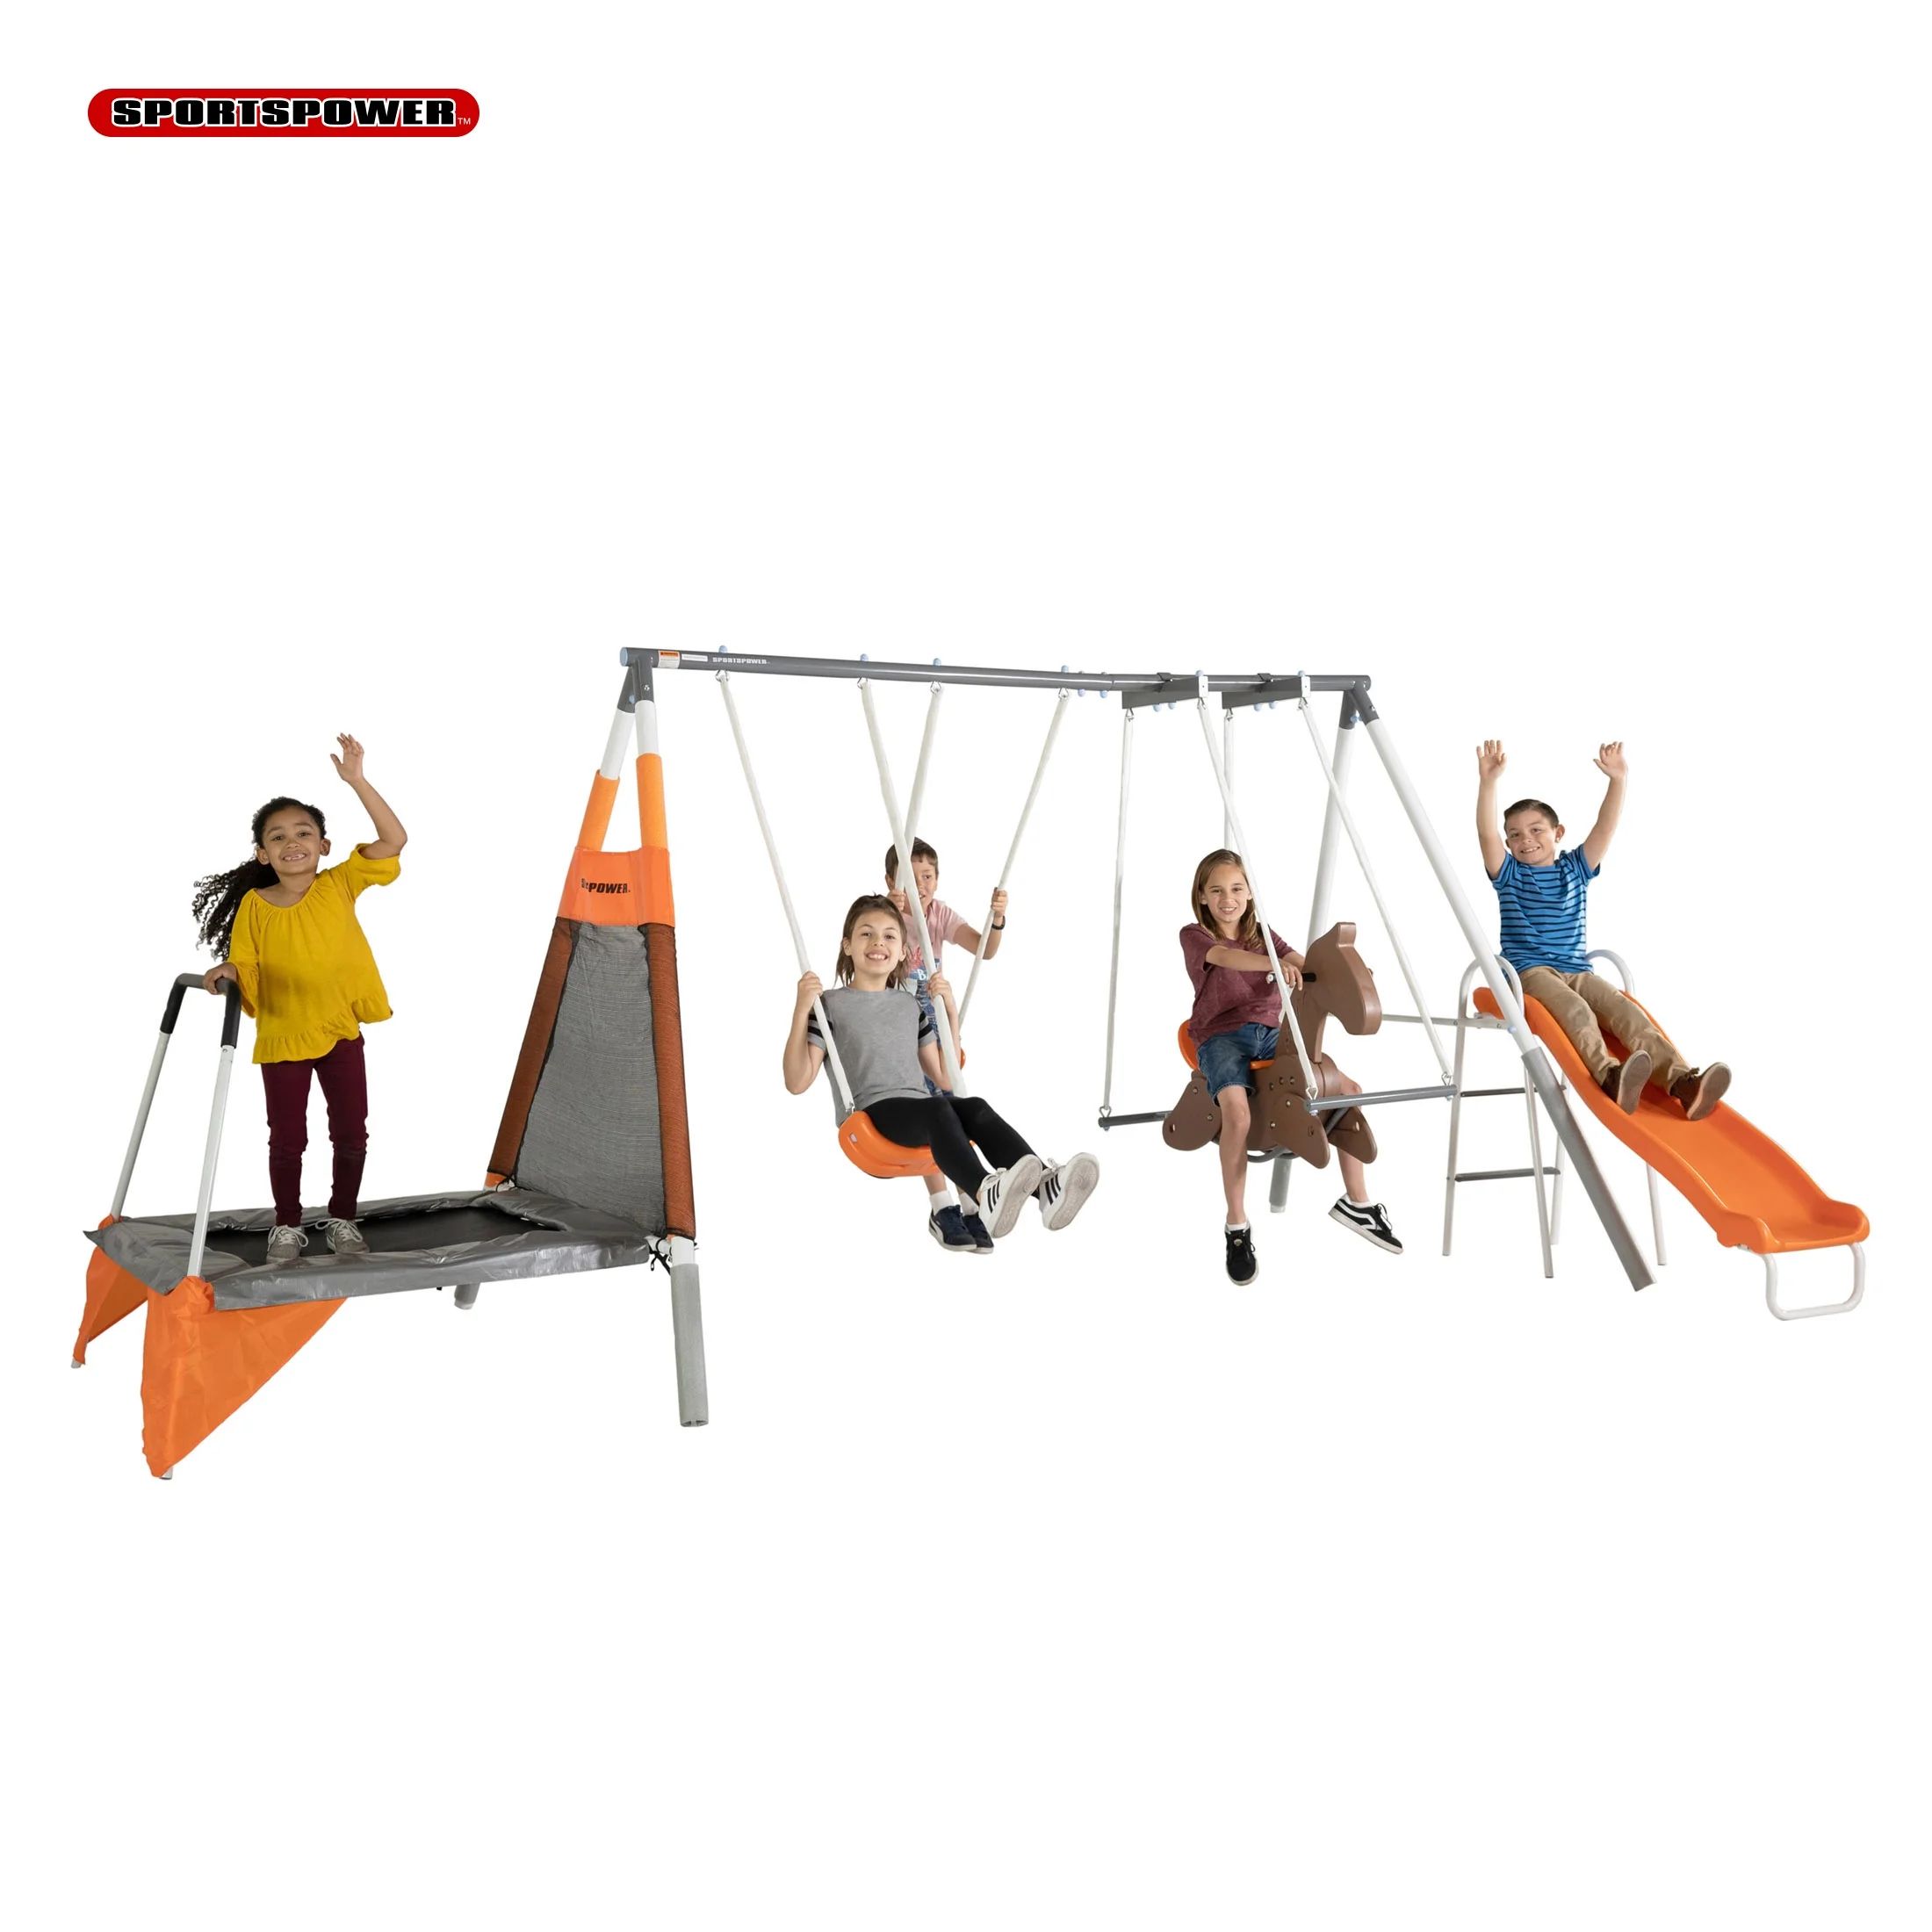 Sportspower Fairview Swing Set with 2 Swings, Rocking Horse, Mini Trampoline, and Heavy Duty Slid... | Walmart (US)